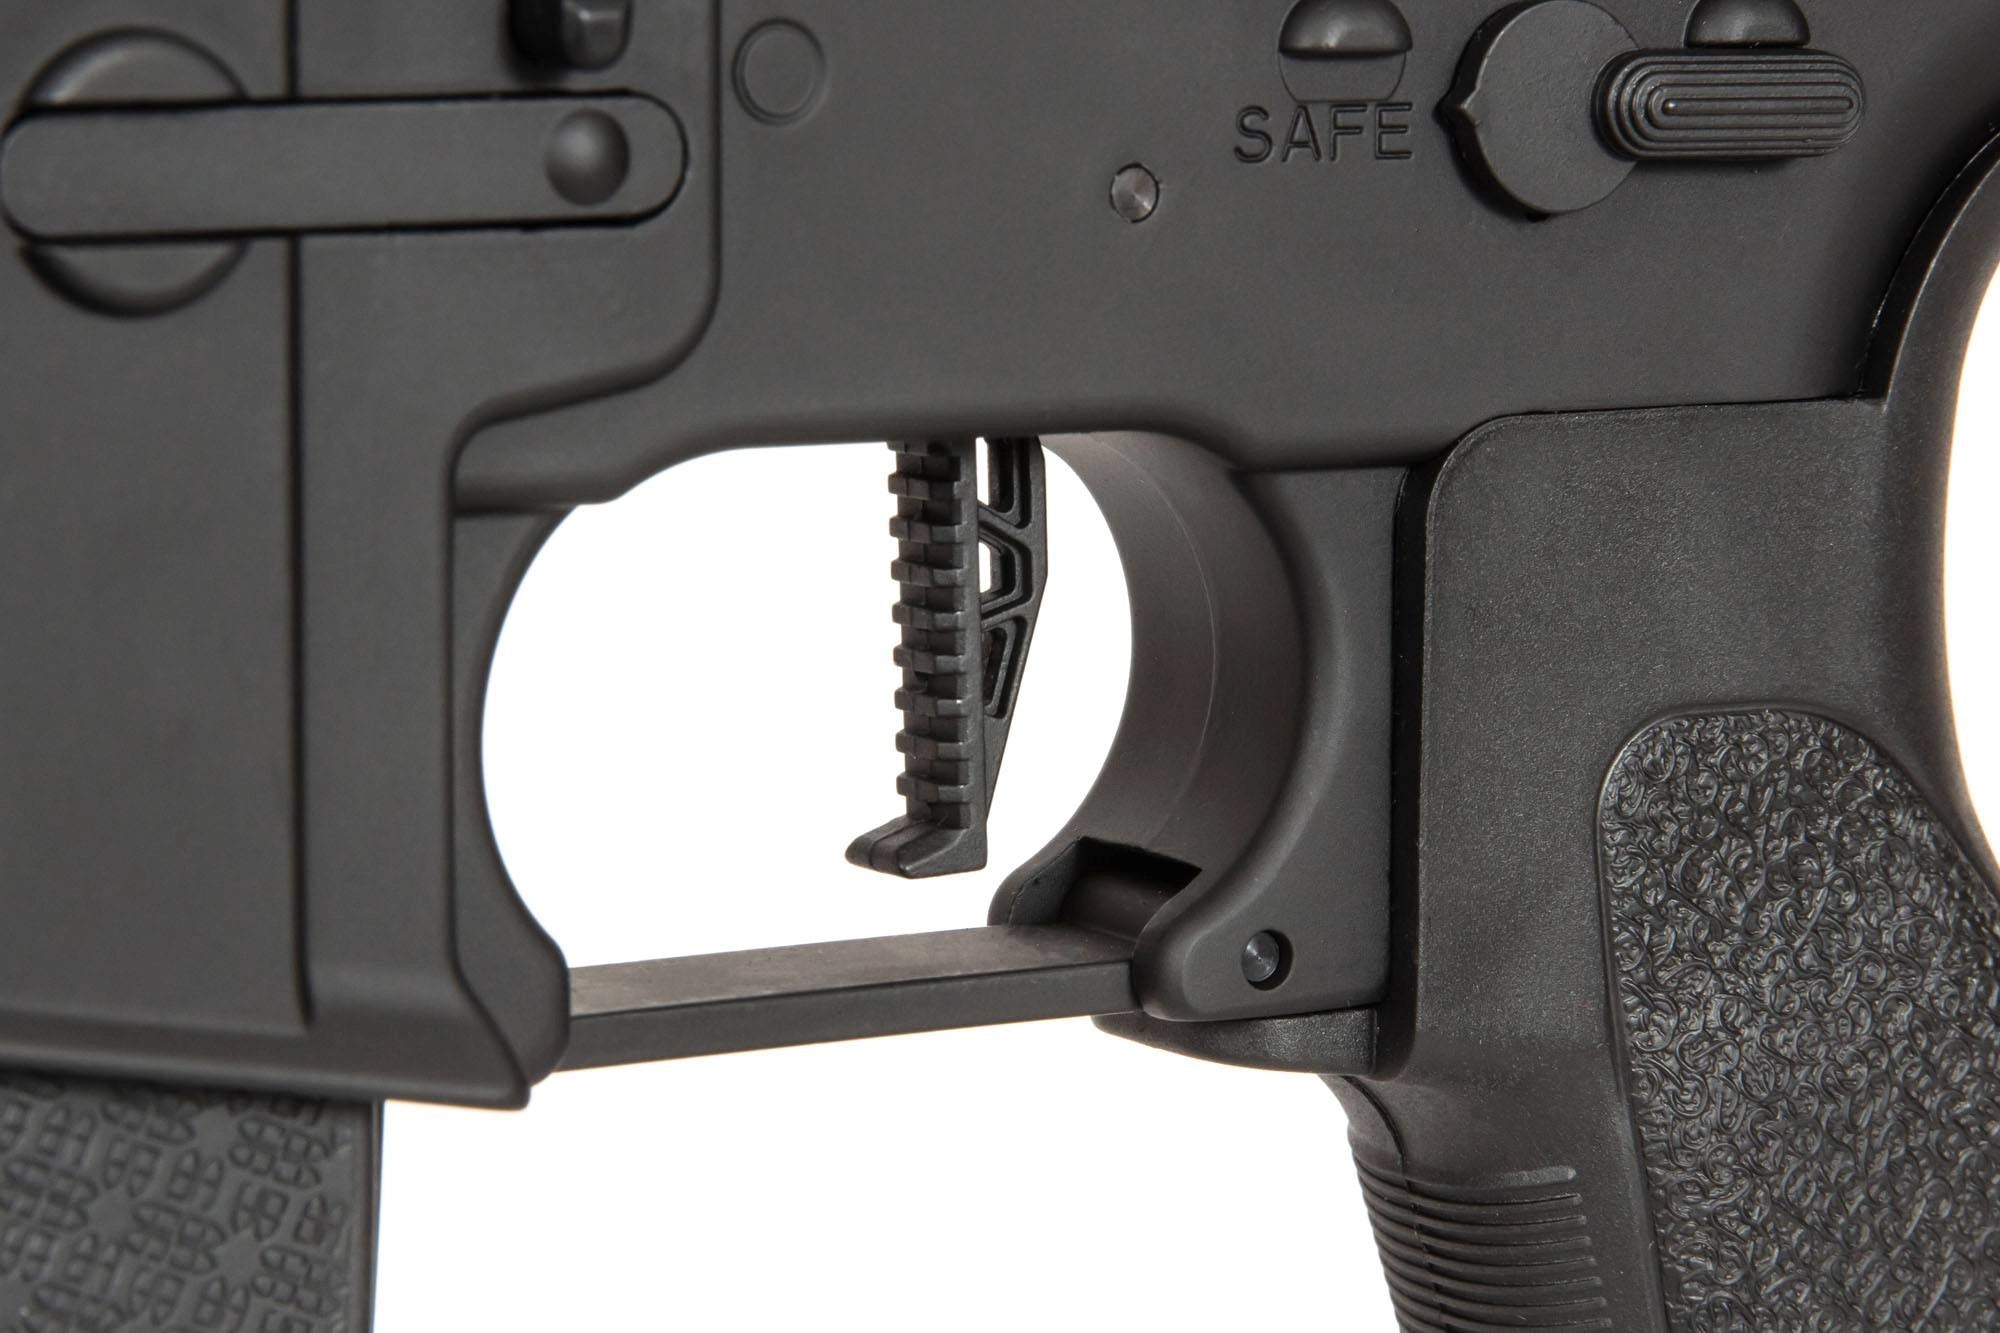 Réplique de carabine SA-E23 EDGE 2.0™ - noire